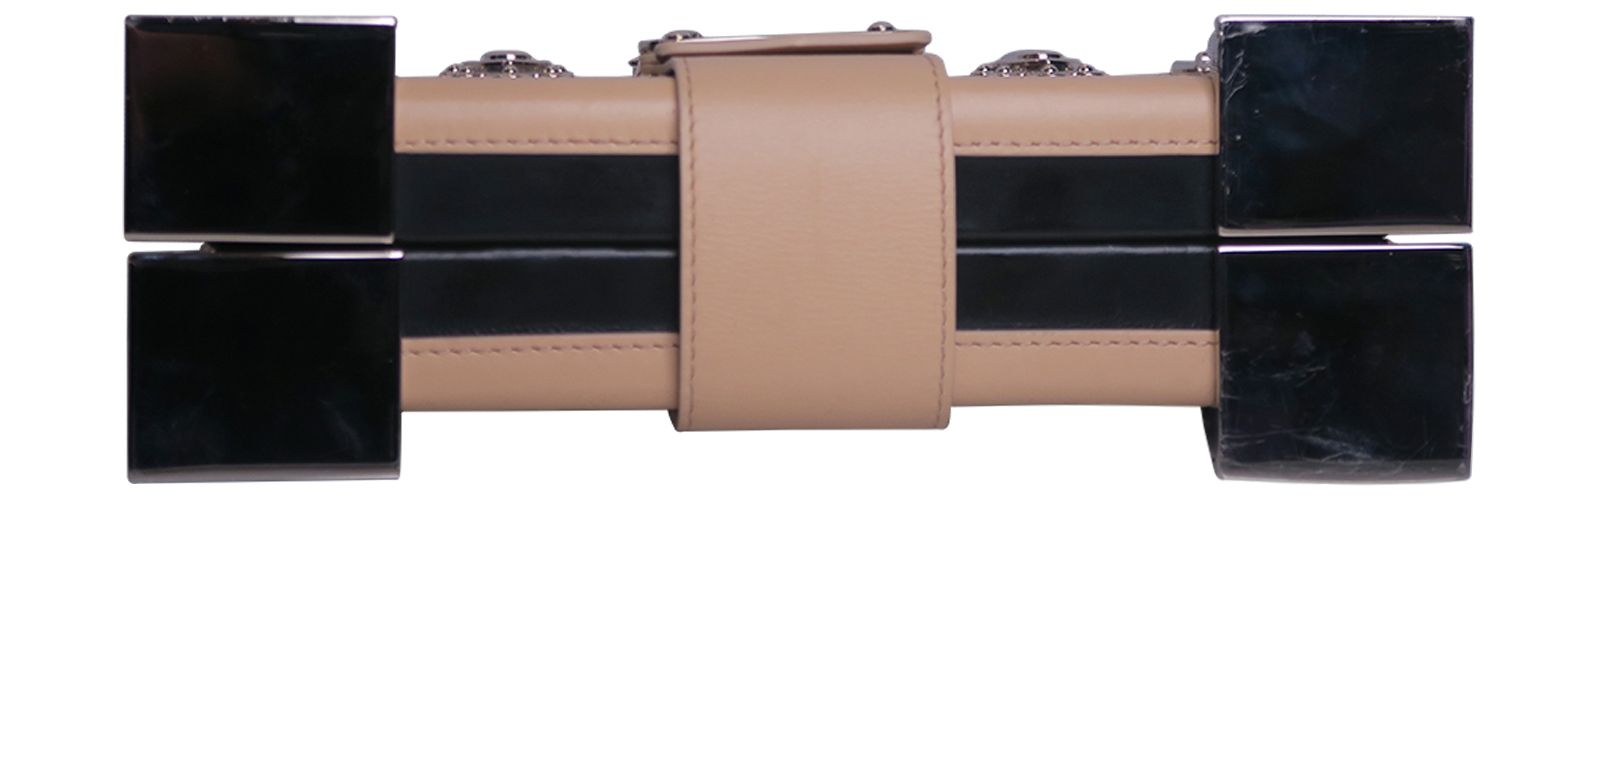 Petite Malle Monogram – Keeks Designer Handbags